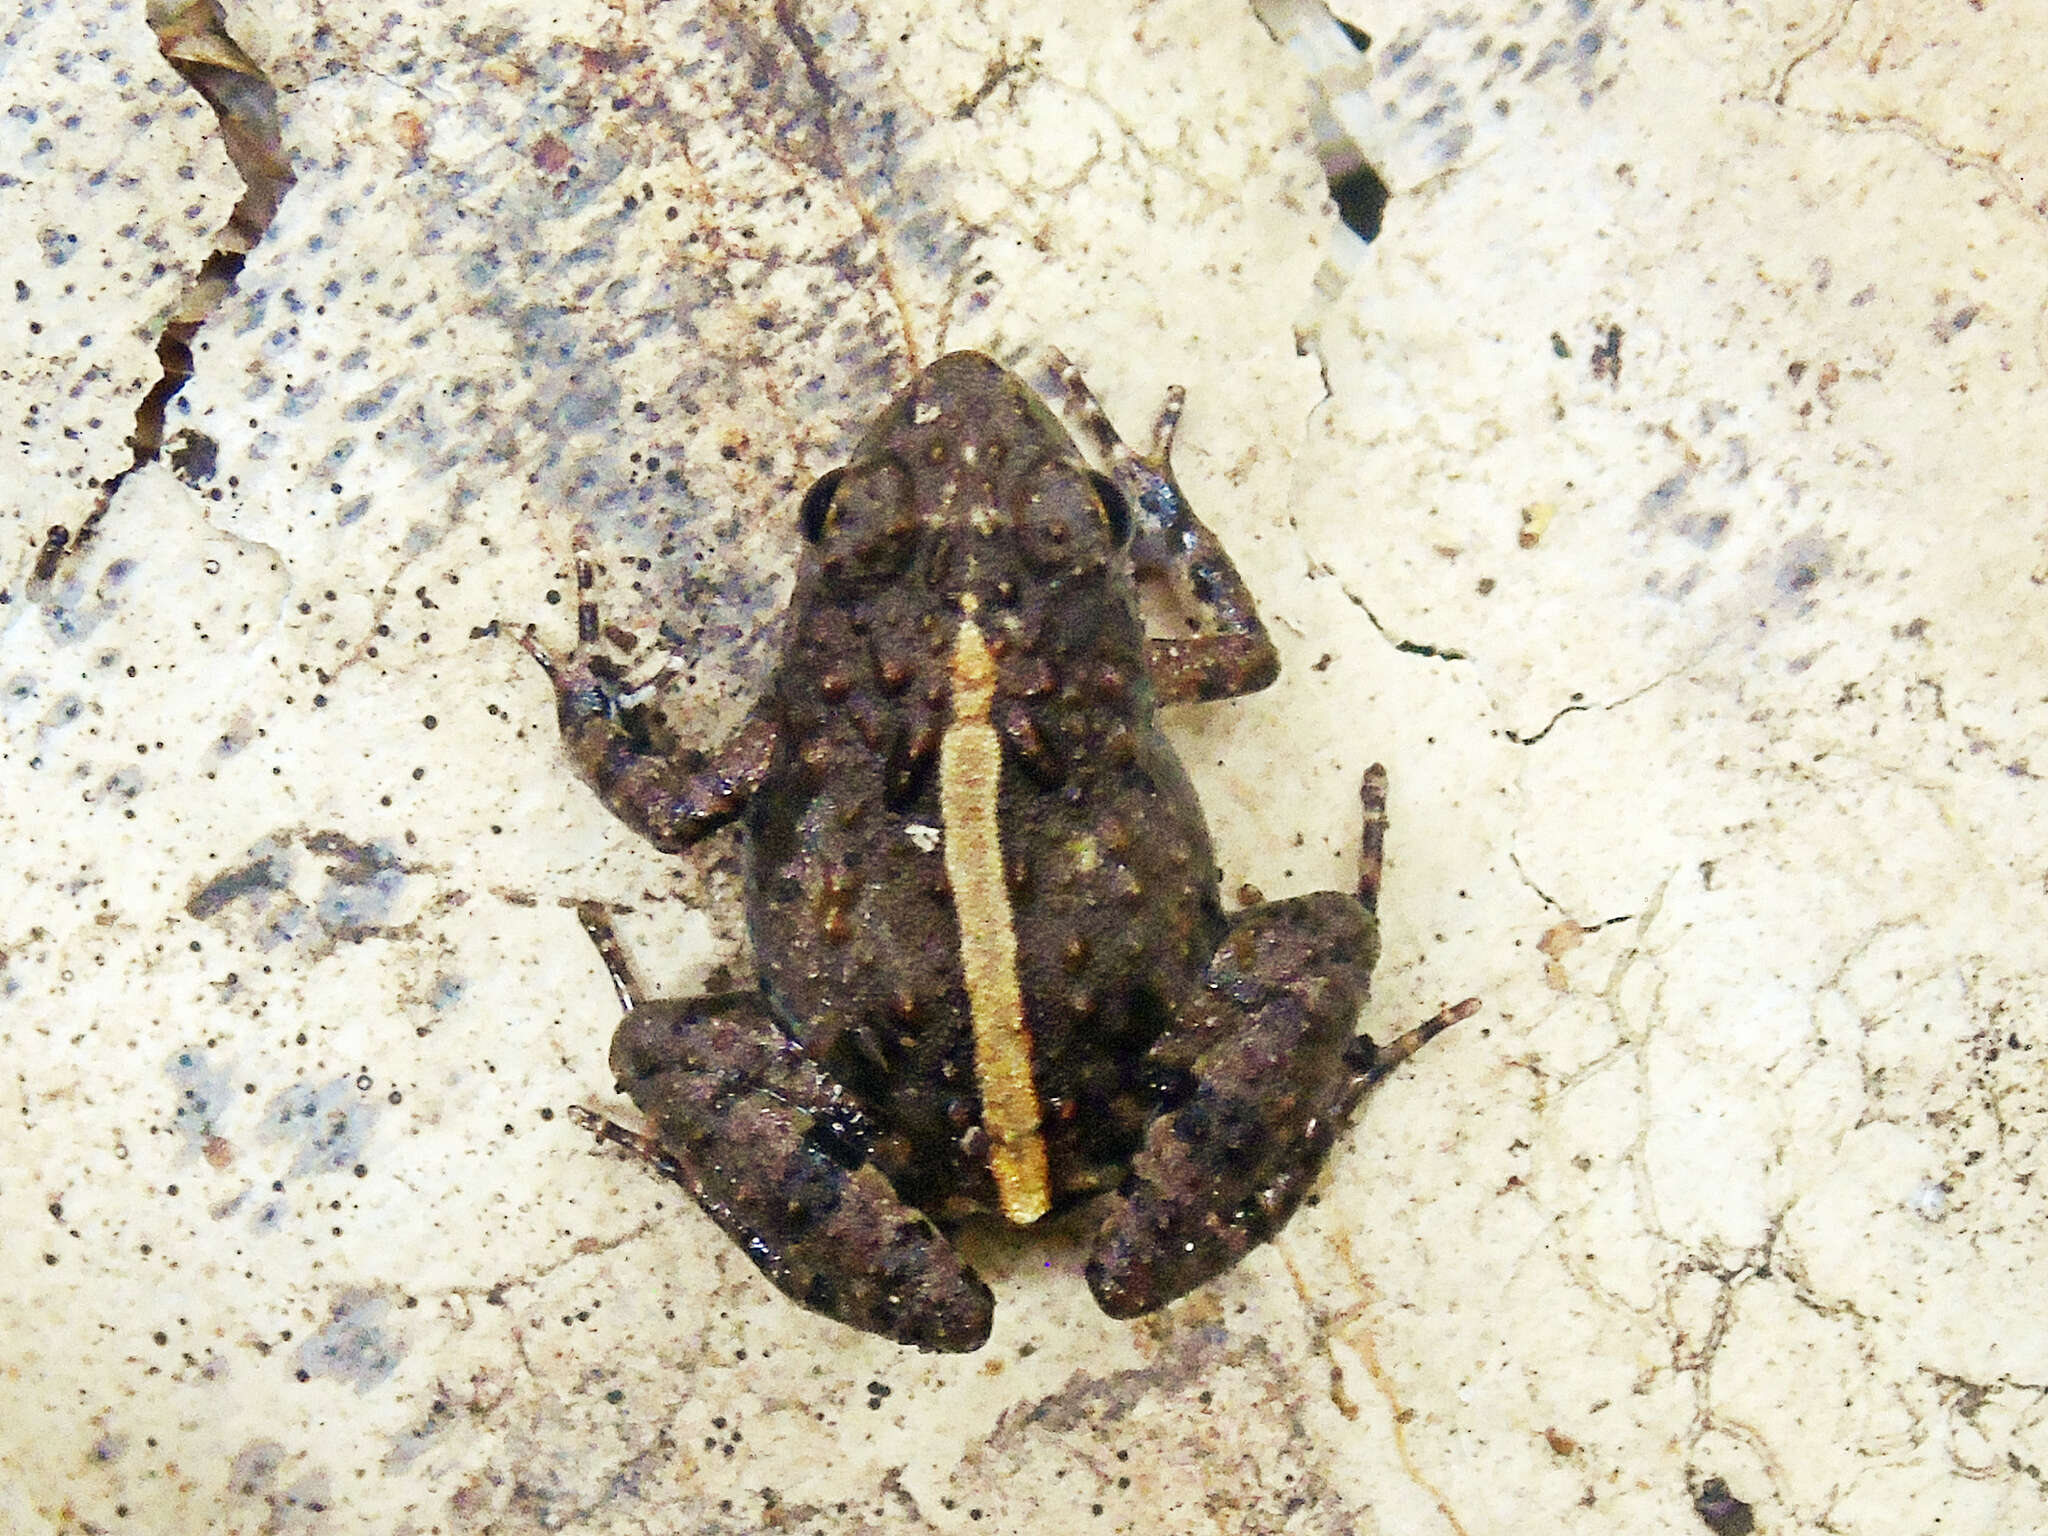 Image of Phrynobatrachus ungujae Pickersgill 2007